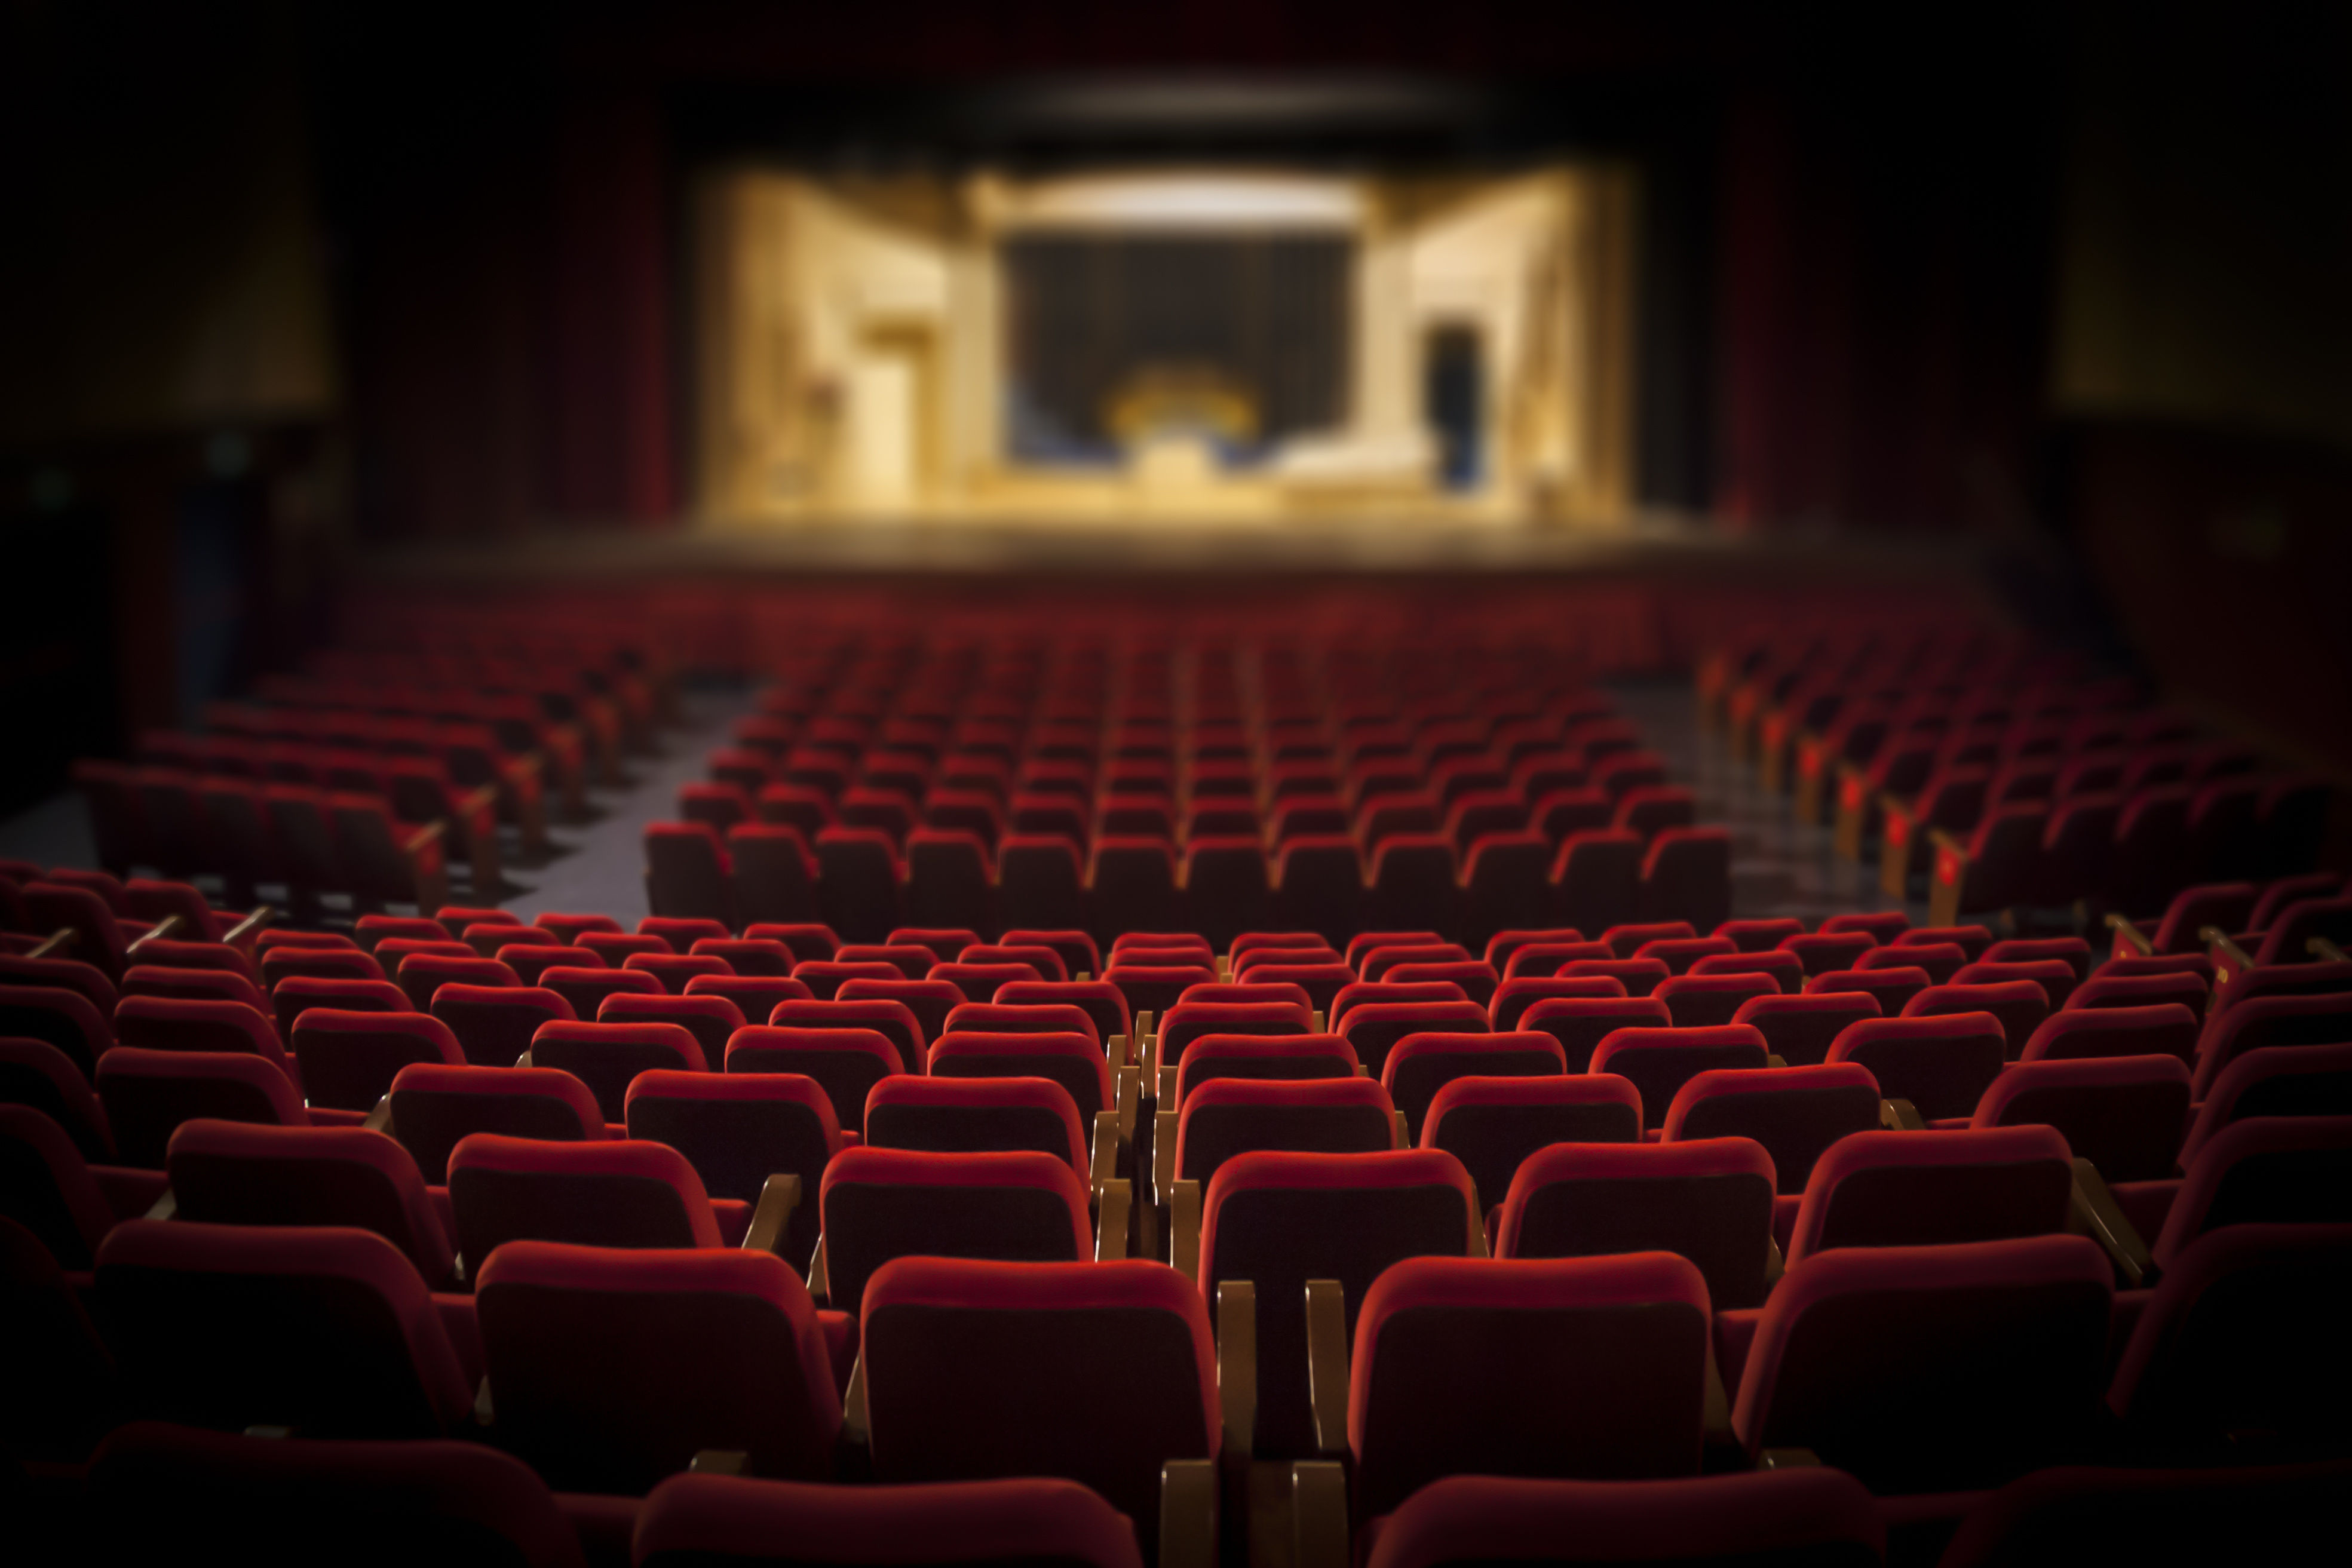 Autorizzazione di spesa in favore del teatro di rilevante interesse culturale “Teatro Eliseo”, ai sensi dell’articolo 22, comma 8, del decreto legge 24 aprile 2017, n. 50, convertito, con modificazioni, dalla legge 21 giugno 2017, n. 96